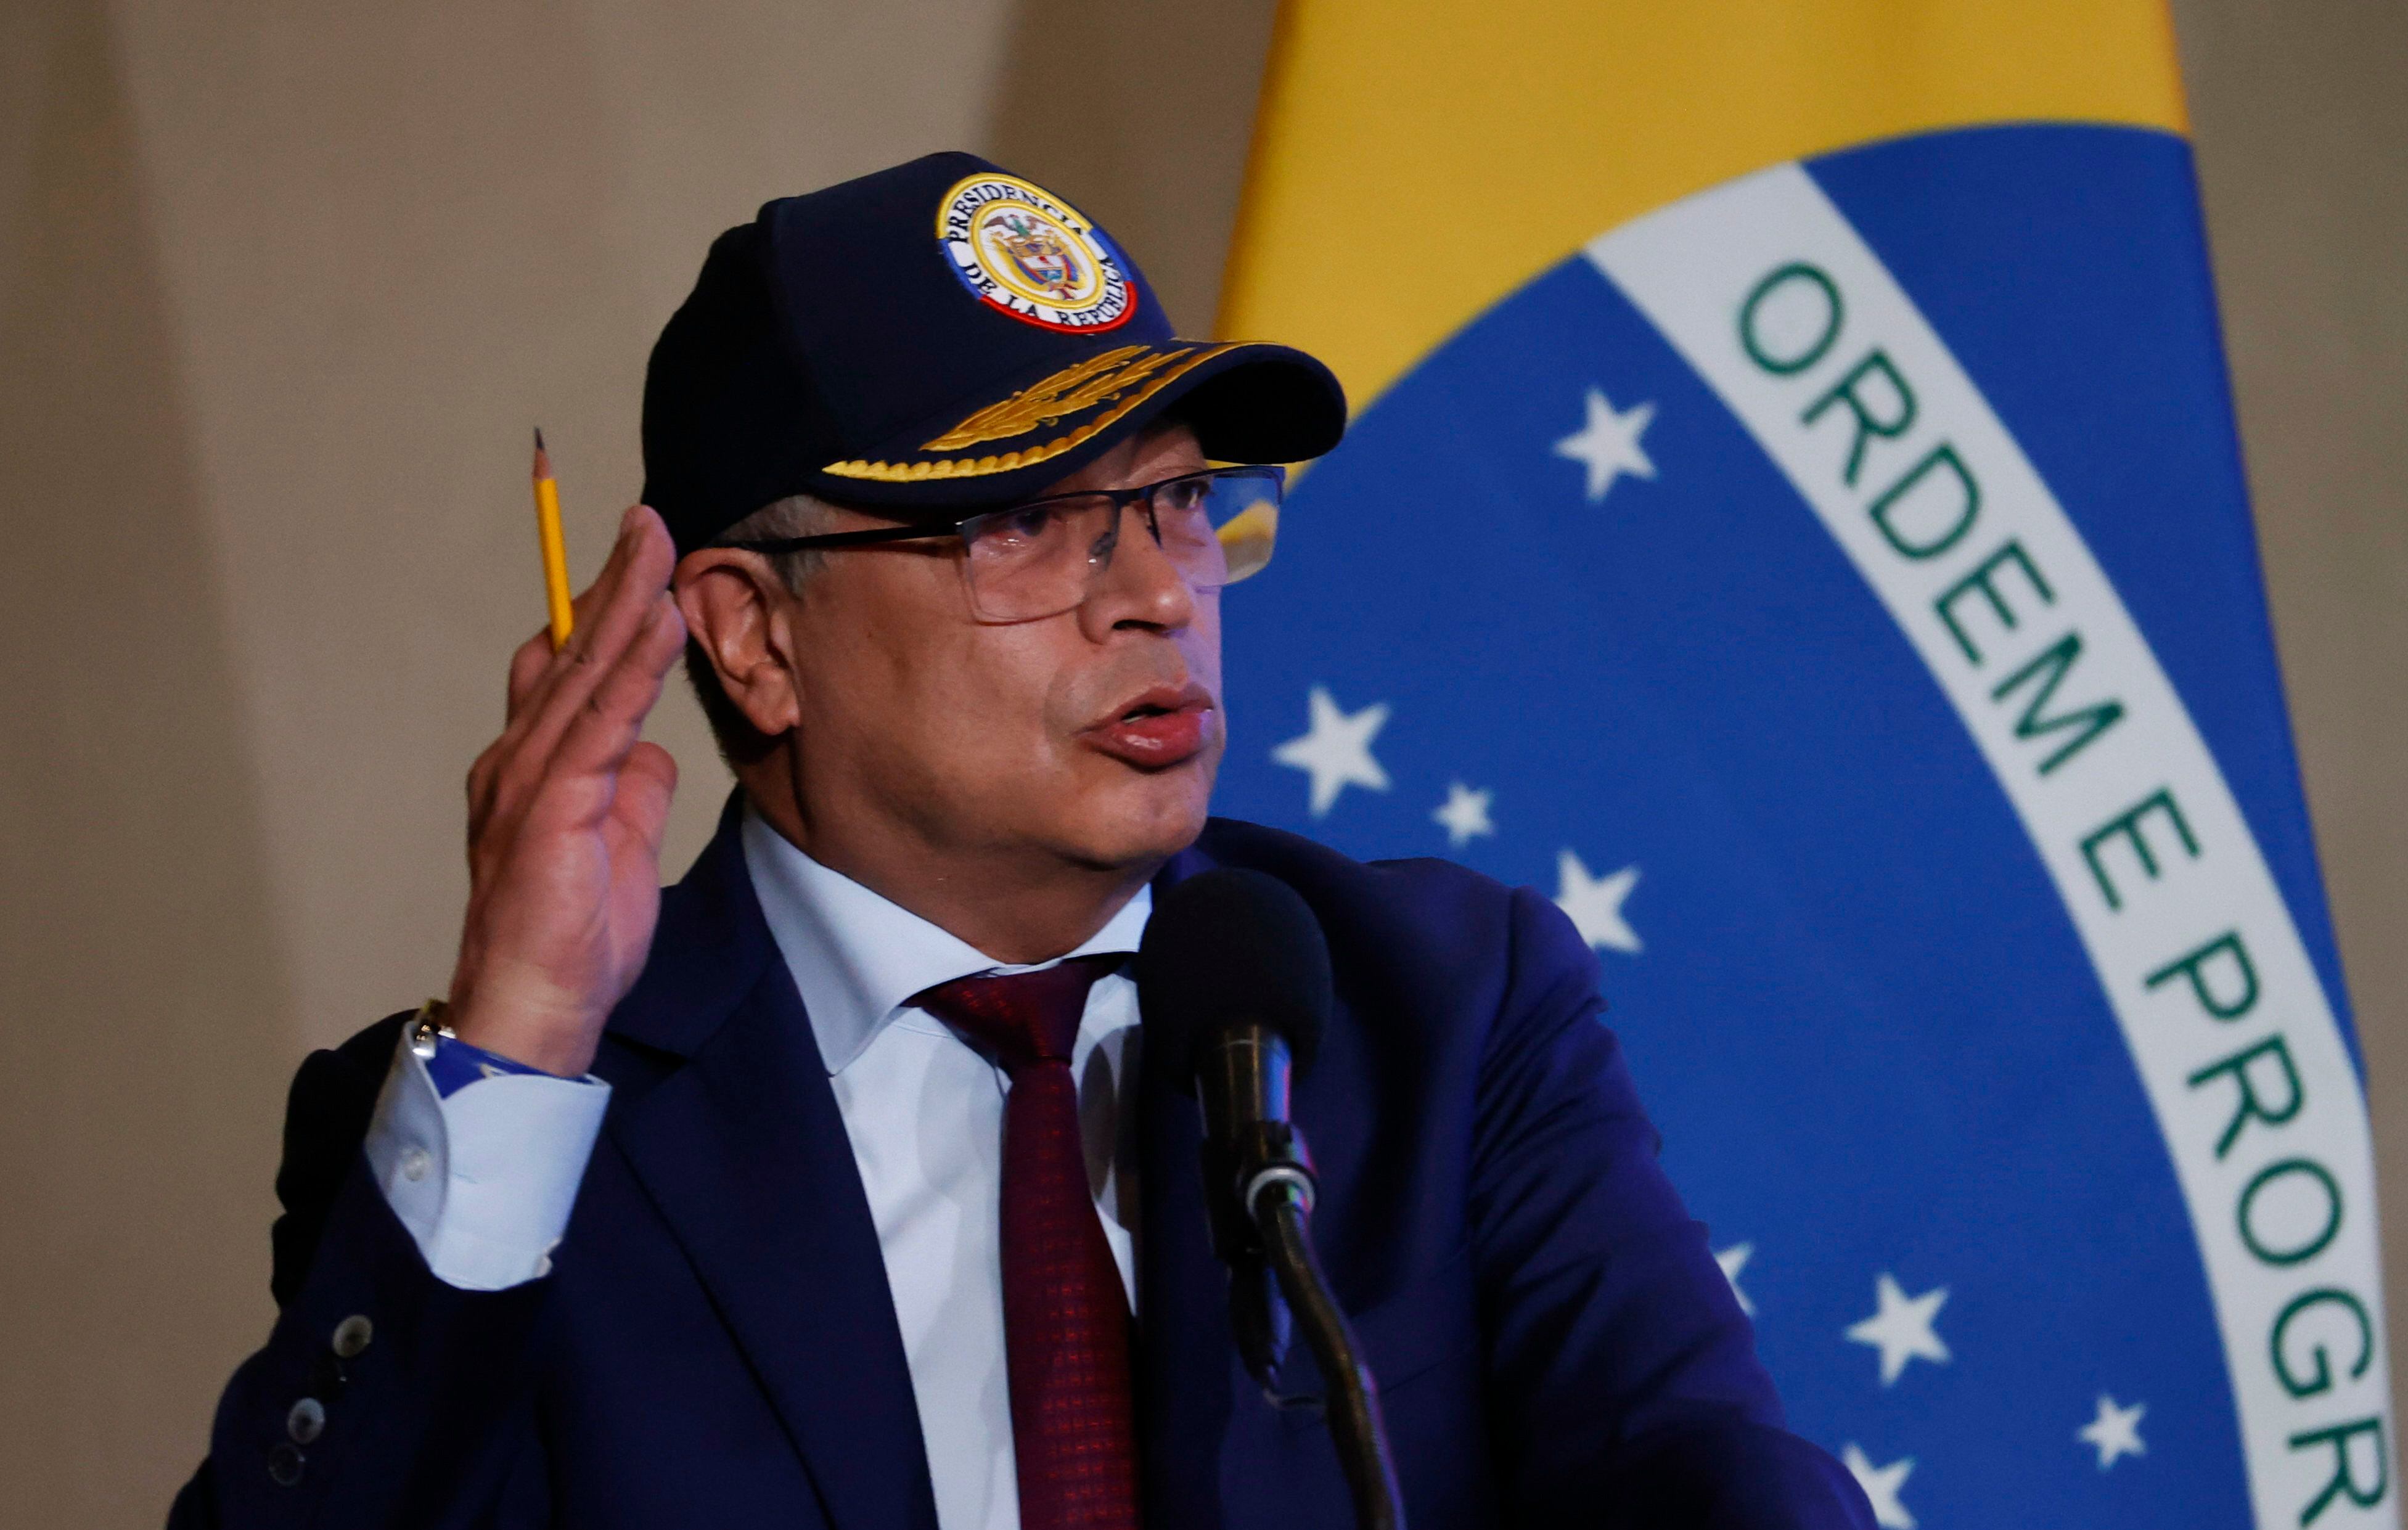 El Consejo Electoral colombiano puede formular cargos a Gustavo Petro por financiación de su campaña - crédito Mauricio Dueñas Castañeda/EFE